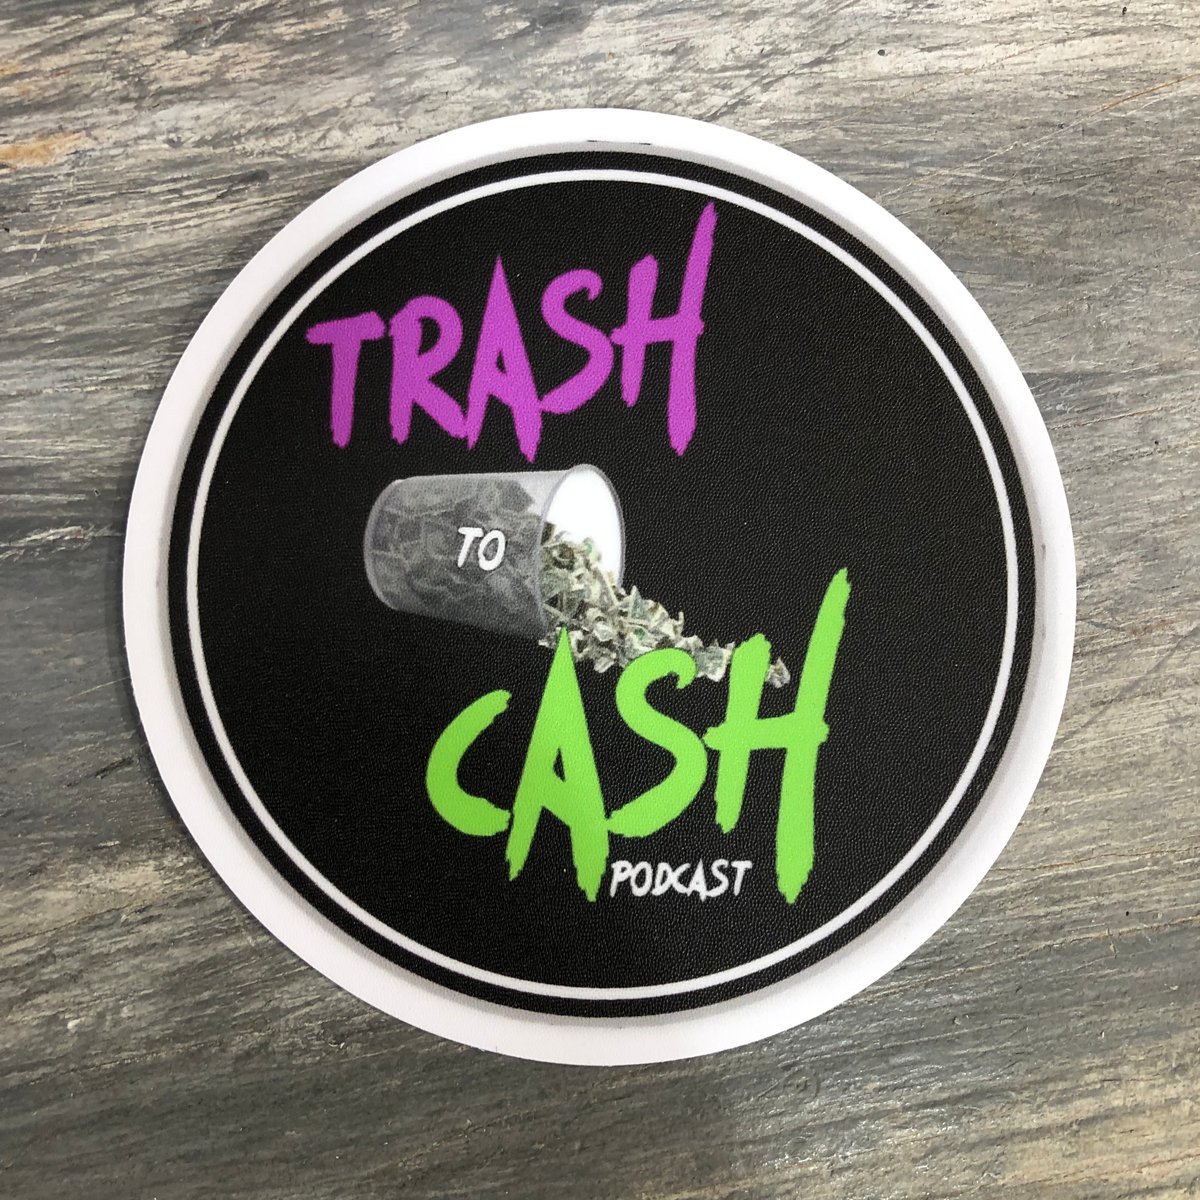 Trash To Cash Podcast Die Cut Sticker